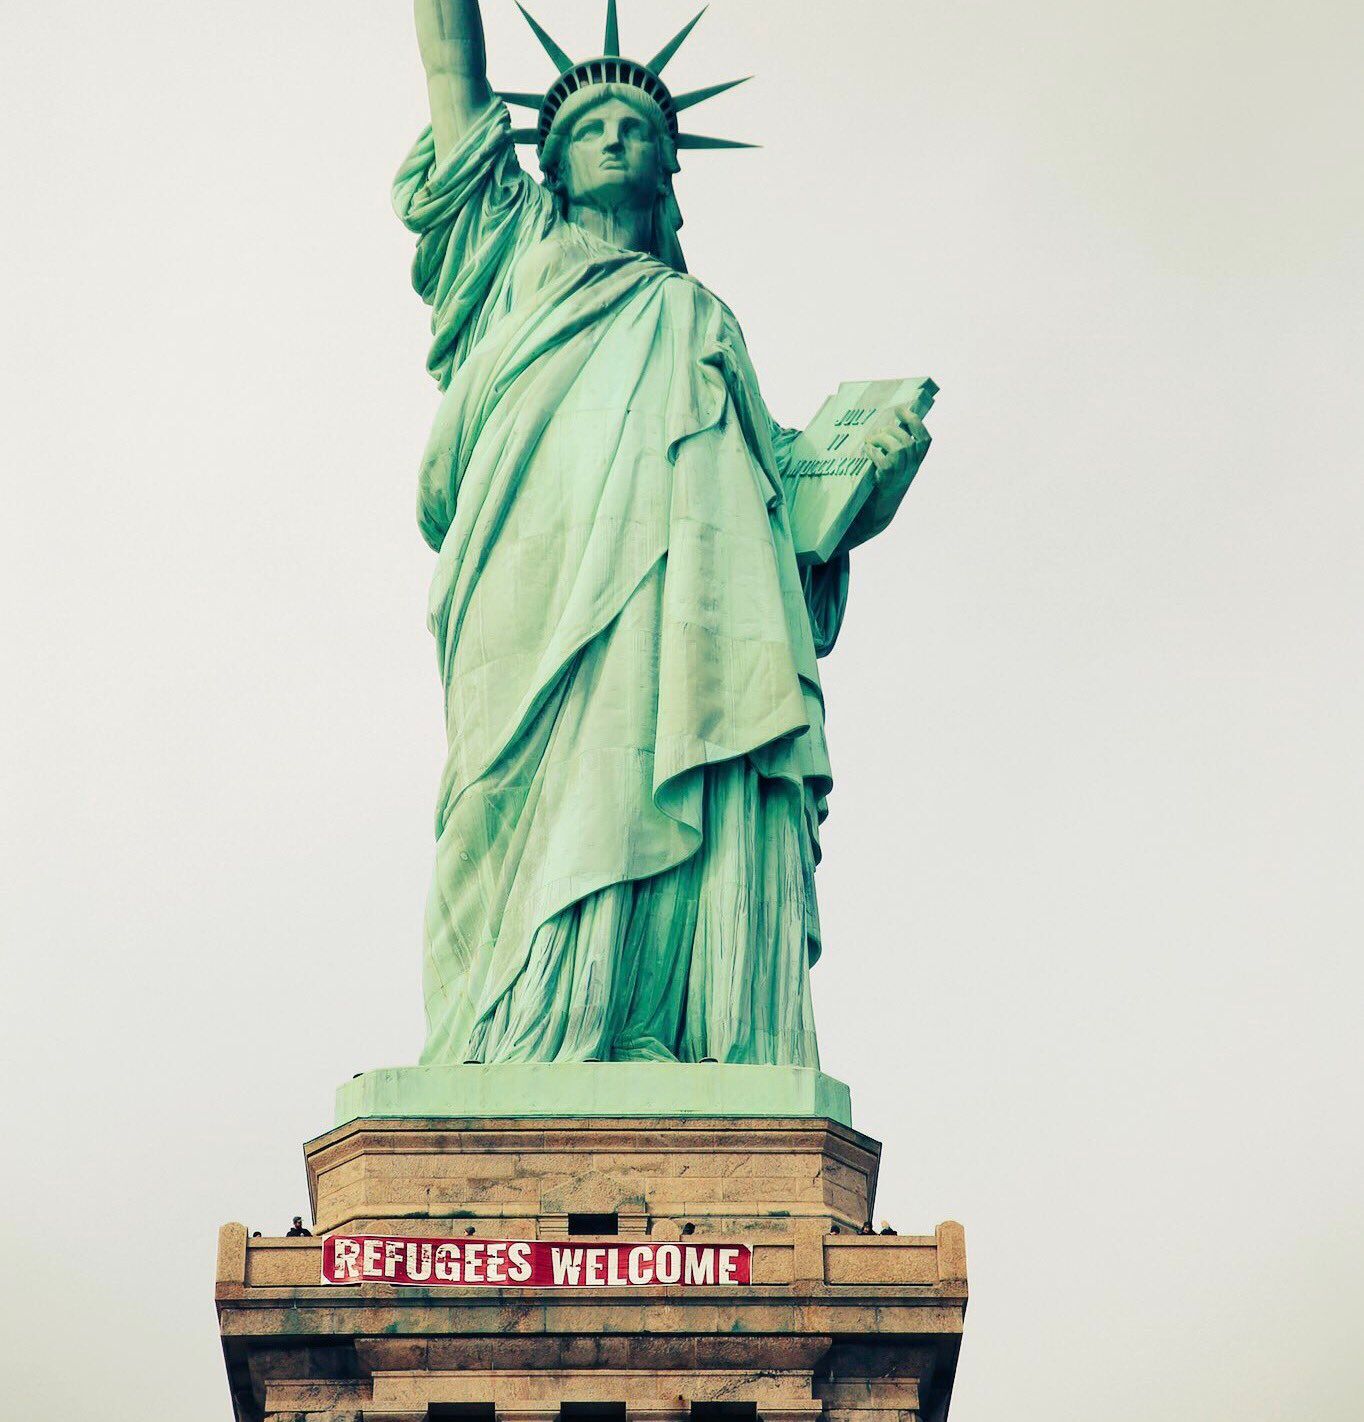 Résultat de recherche d'images pour "statue of liberty refugees welcome"